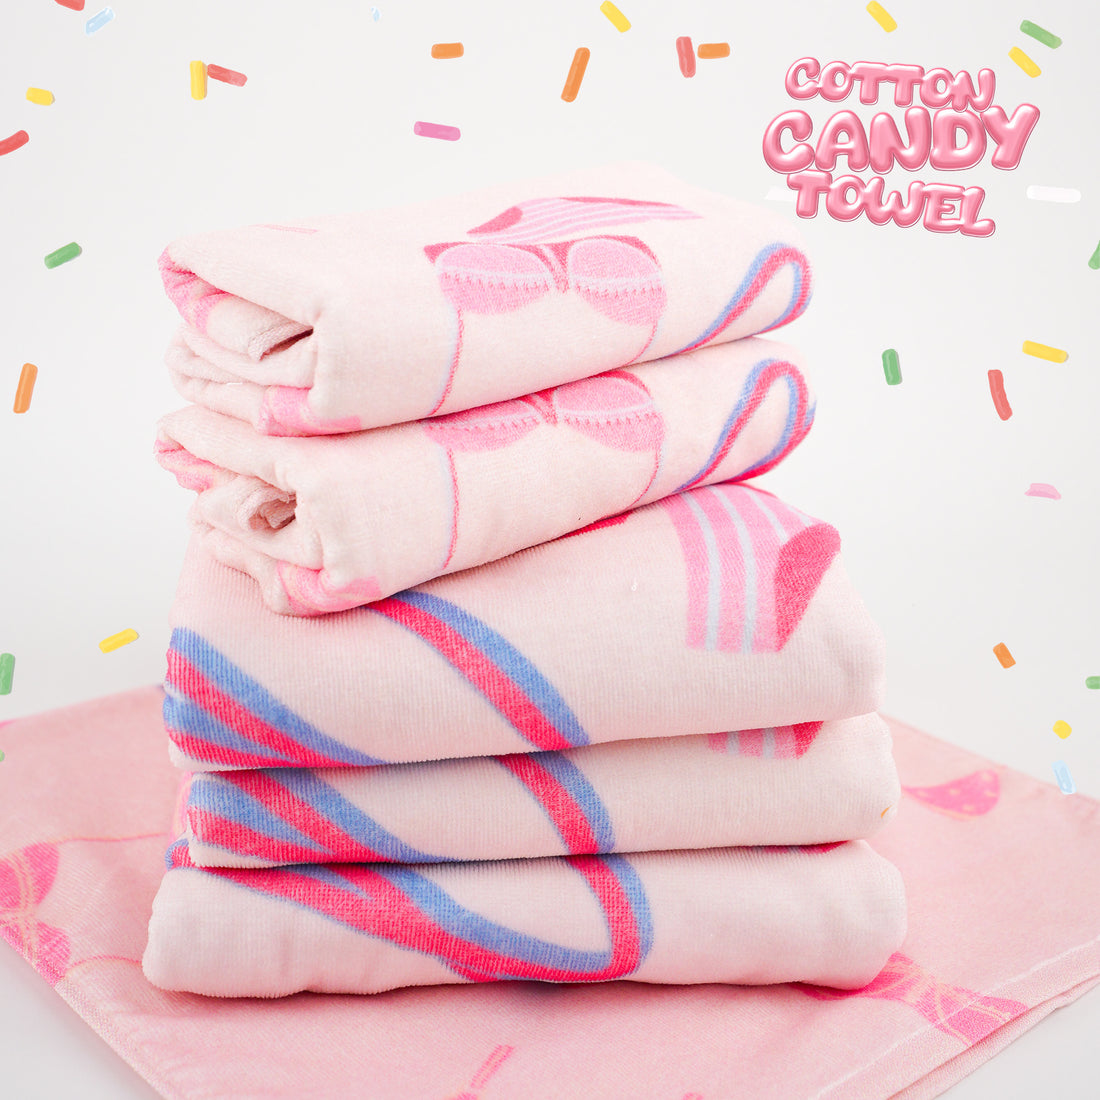 Wacoal Cotton Candy Towel ผ้าขนหนูเช็ดตัว รุ่น WW120400 (มี 2 สี สีชมพู/สีขาว)